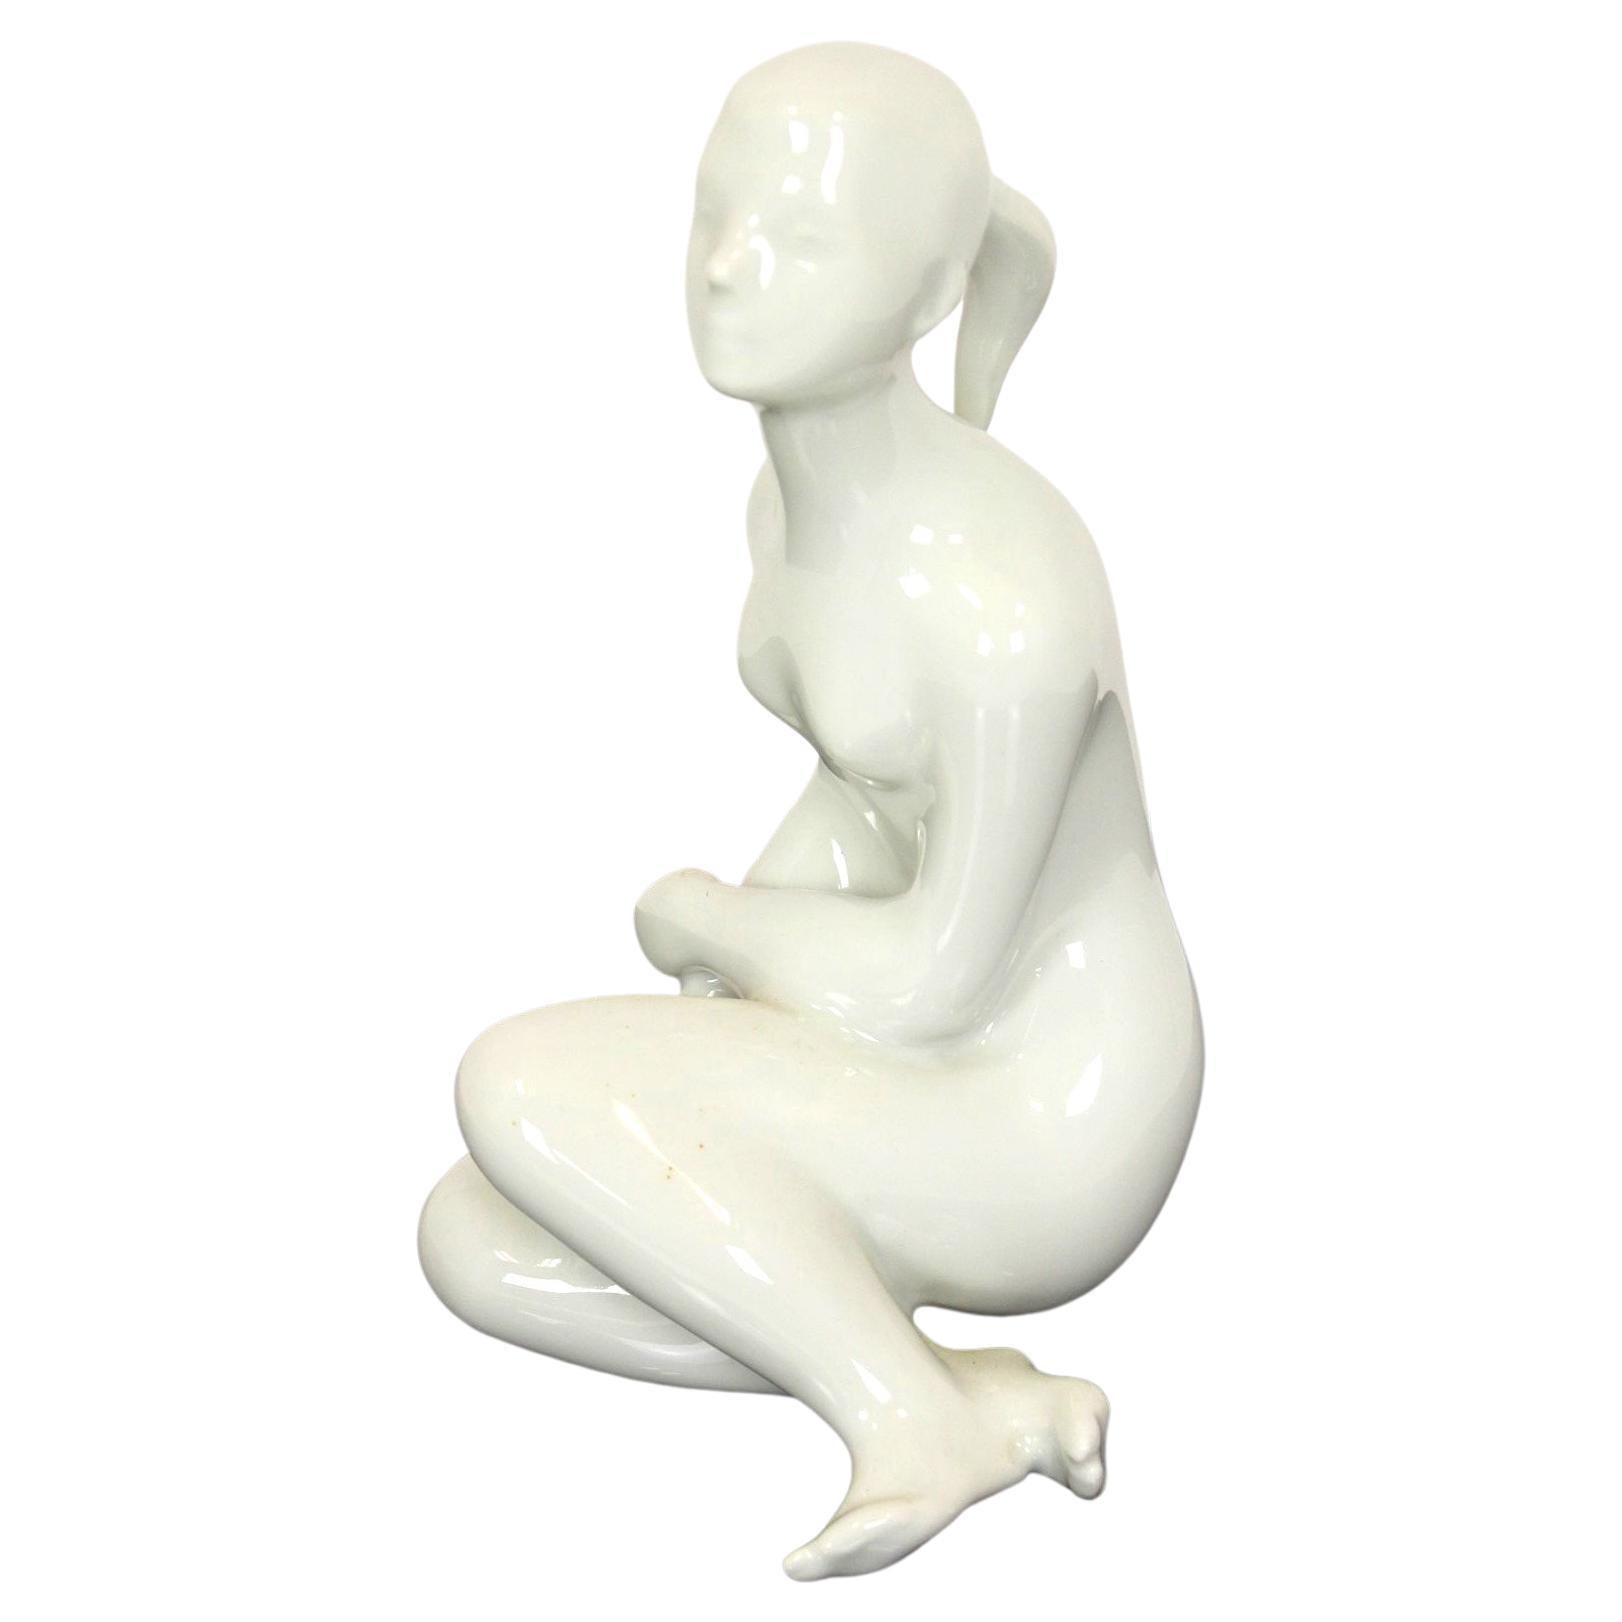 Figurine of a Naked Woman, Royal Dux, Czechoslovakia, 1960s